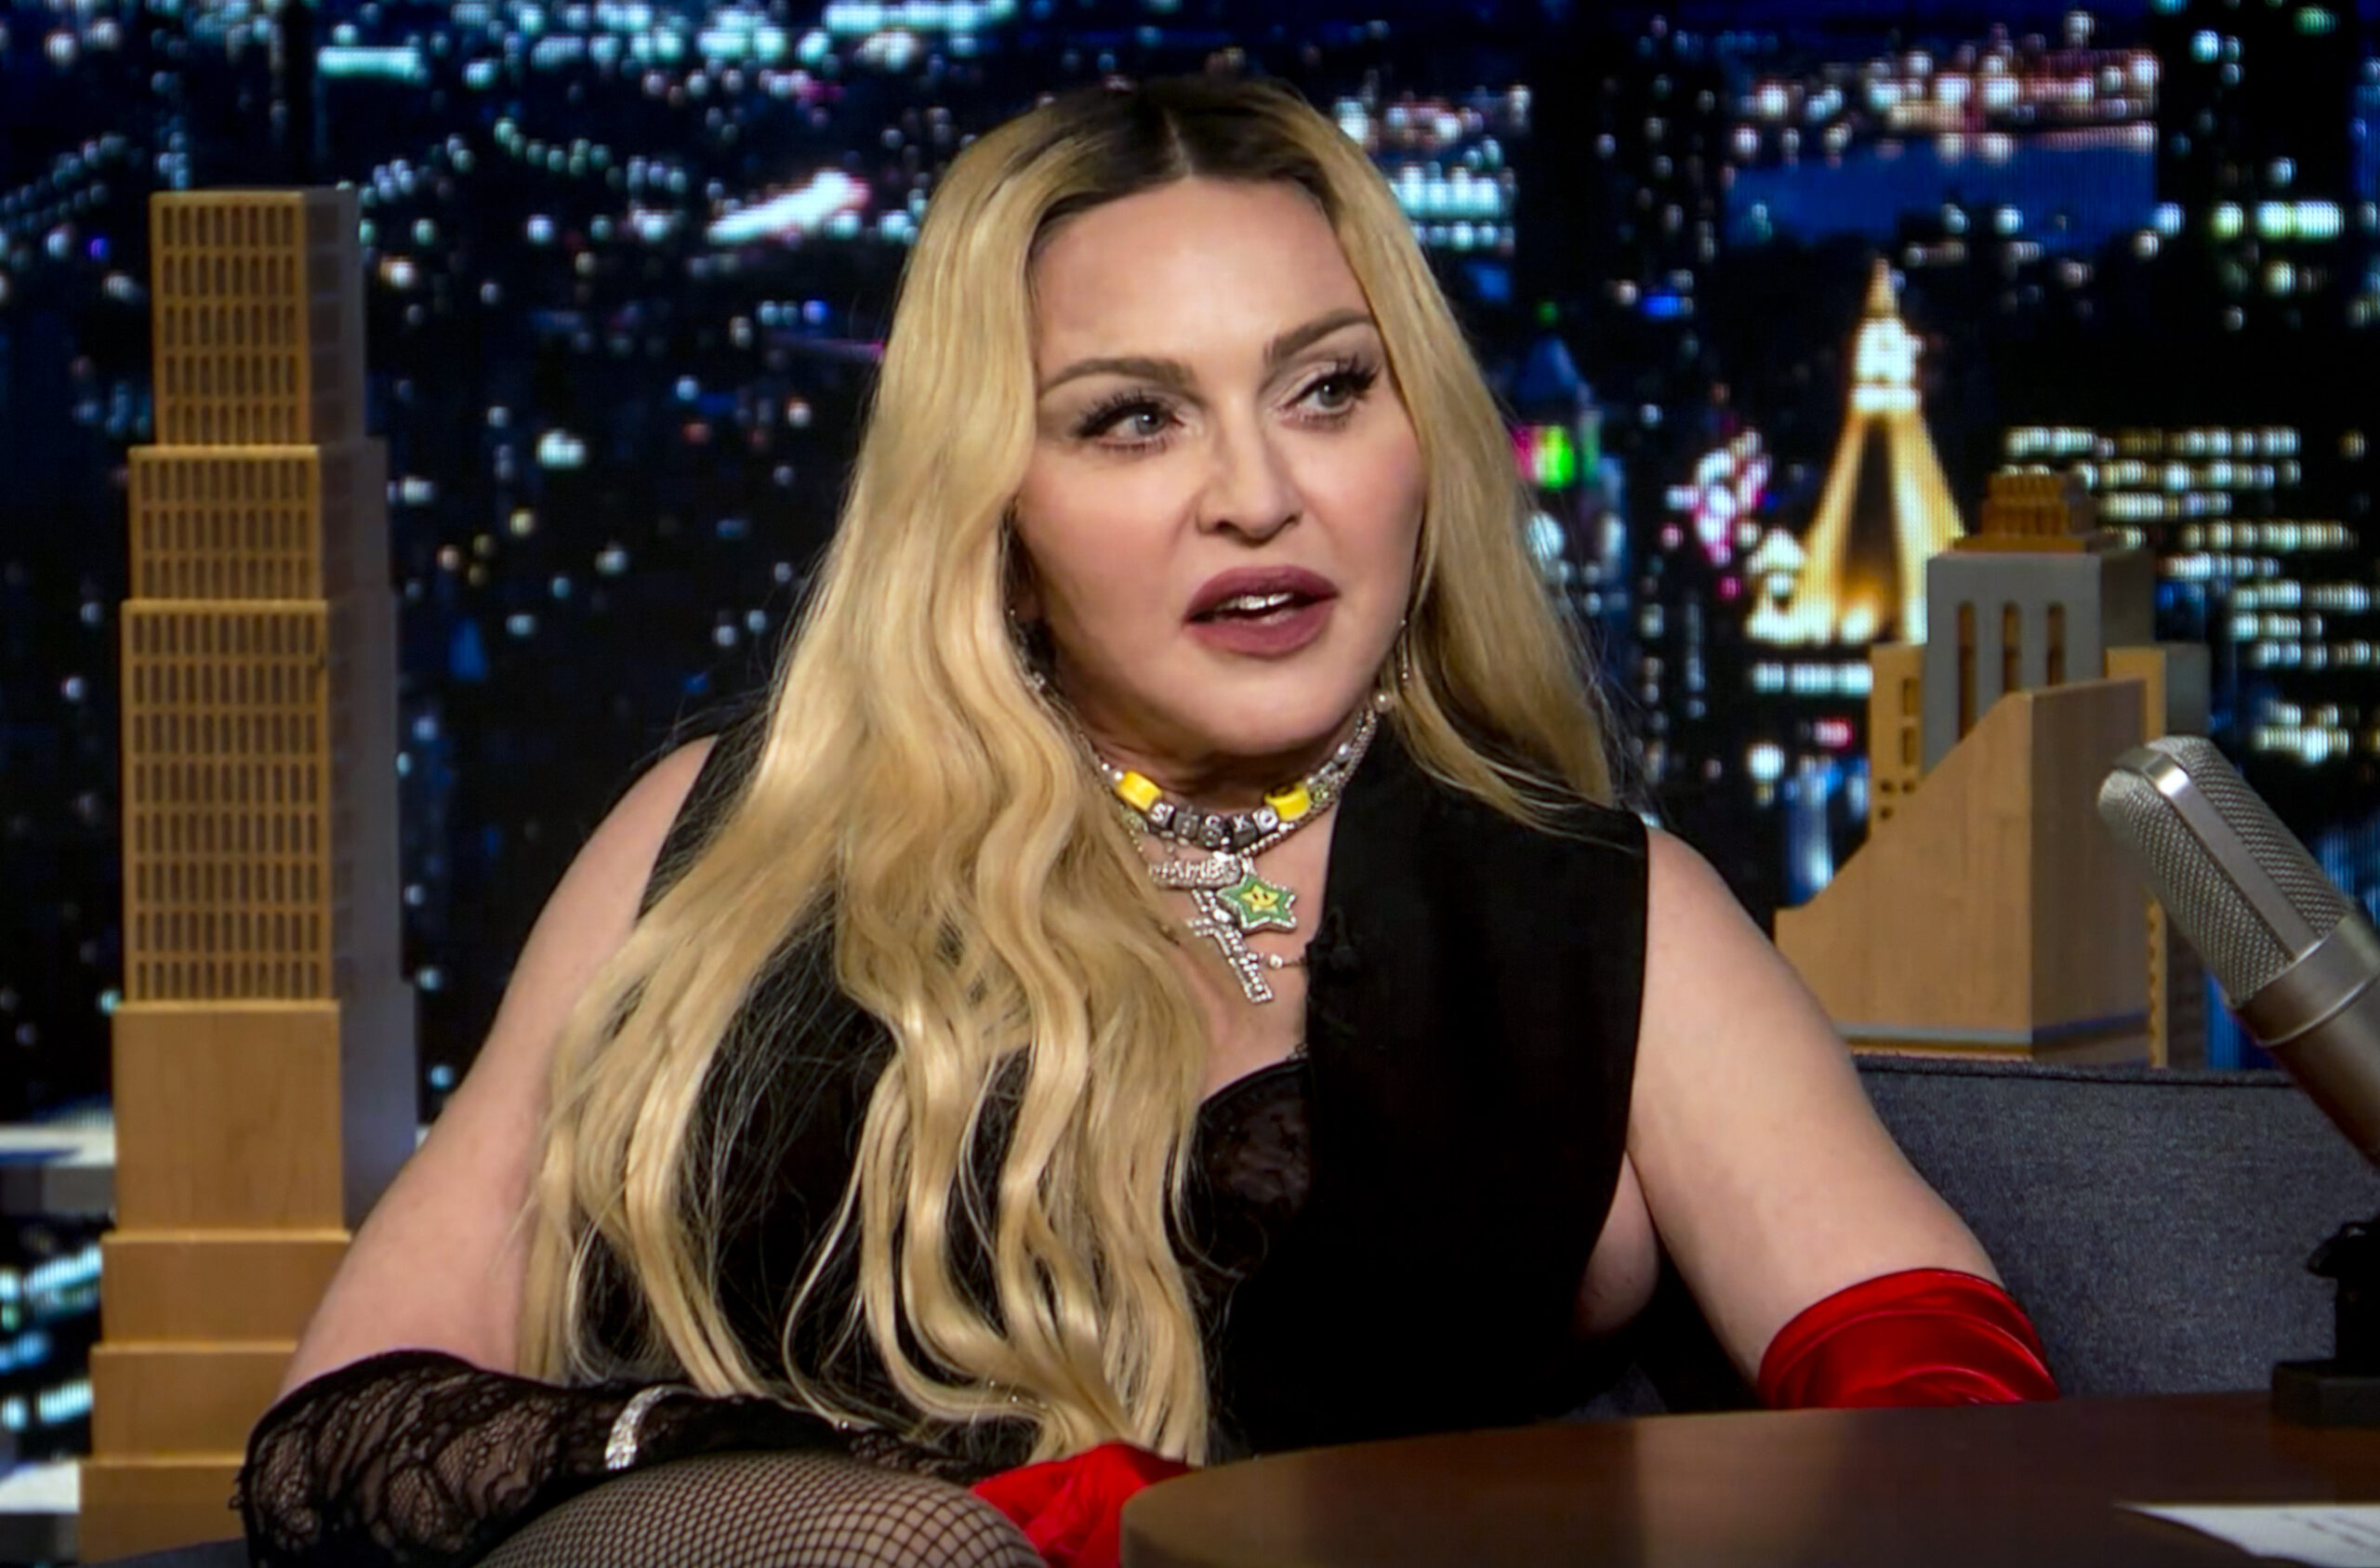 Madonna și-a pus internetu-n cap cu cele mai recente imagini. Copiii tăi ce părere au despre asta?